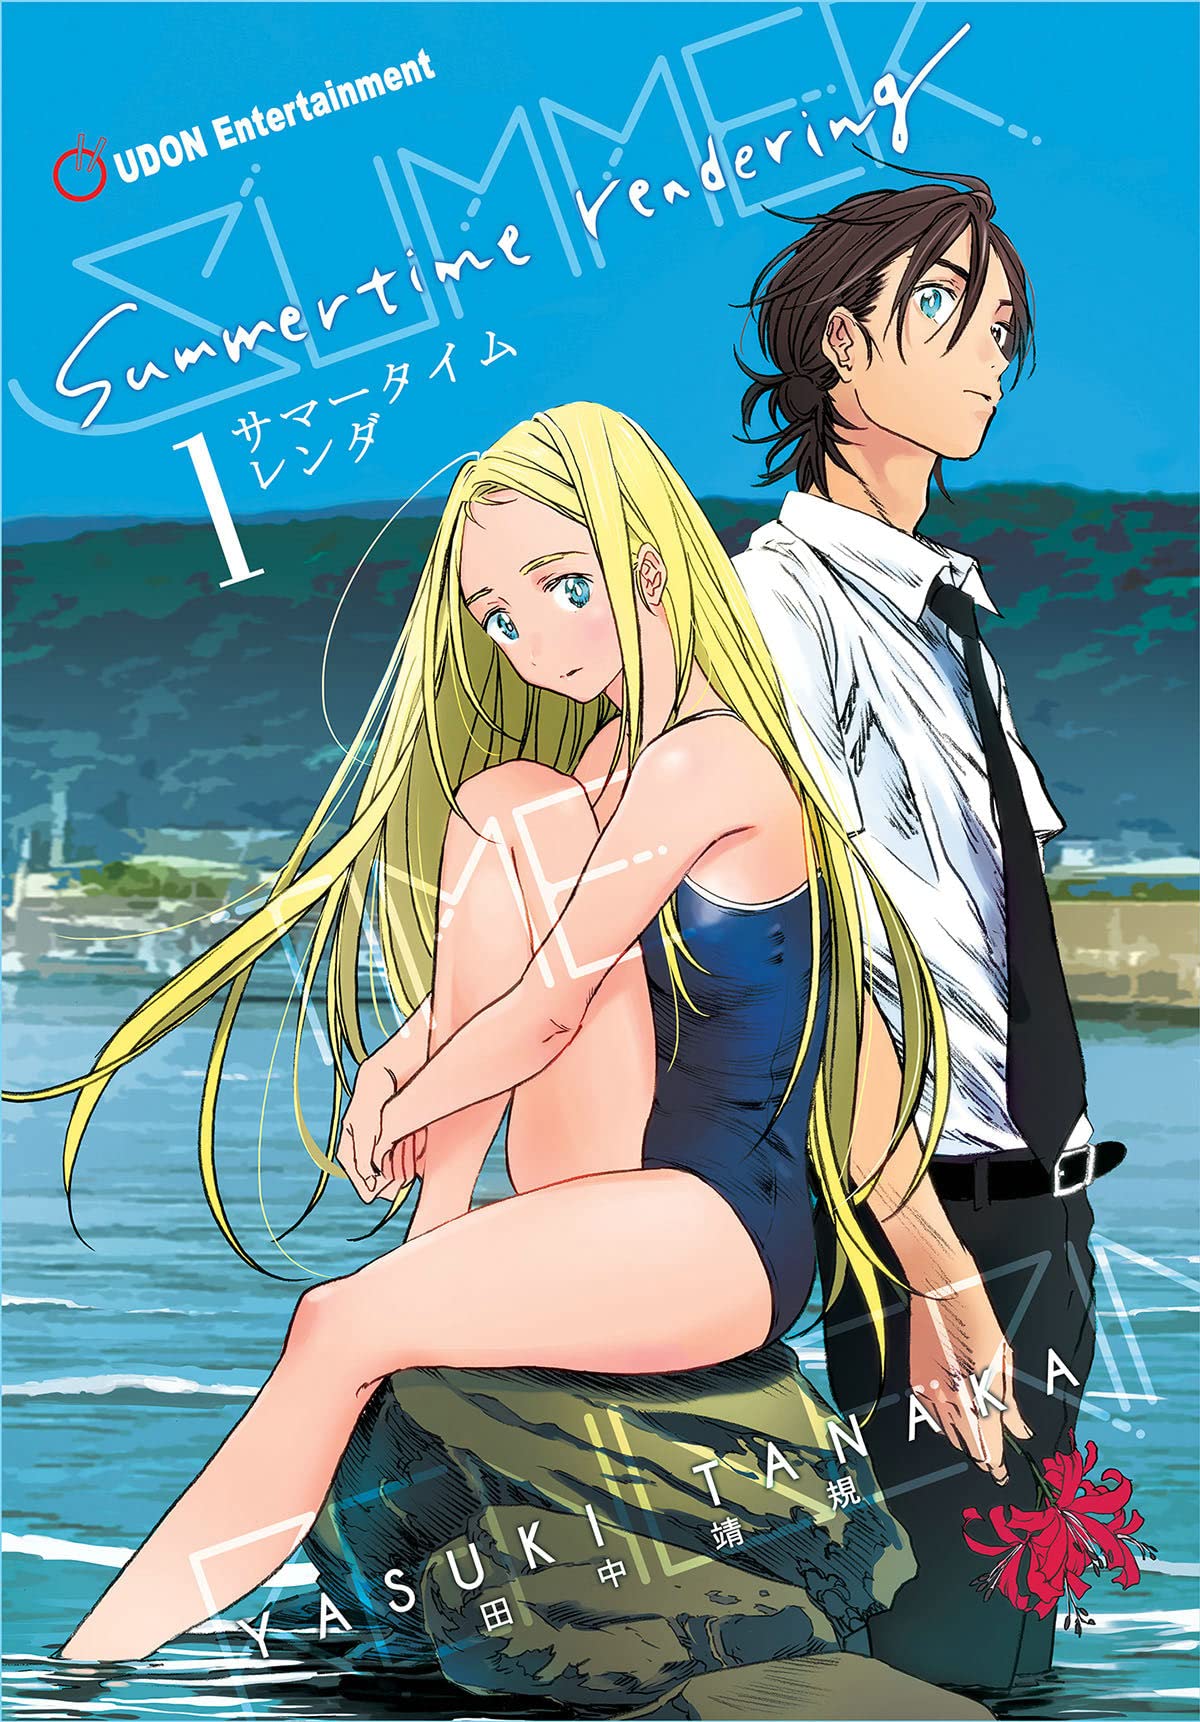 Summertime Rendering Volume 3 (Paperback) by Yasuki Tanaka